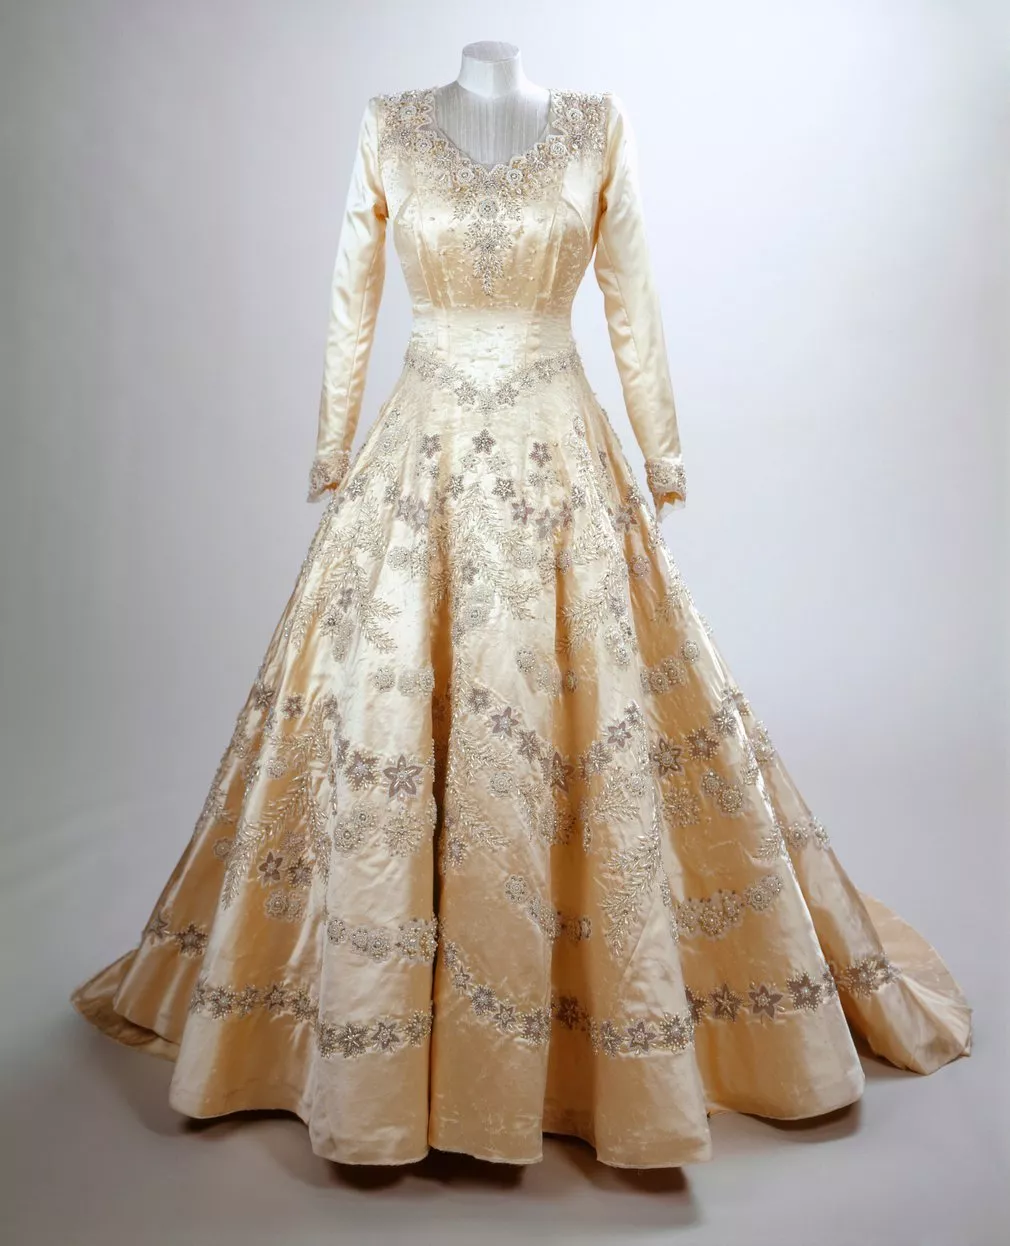 9 حقائق مدهشة عن فستان زفاف الملكة اليزابيث... هل فعلاً القماش من سوريا؟